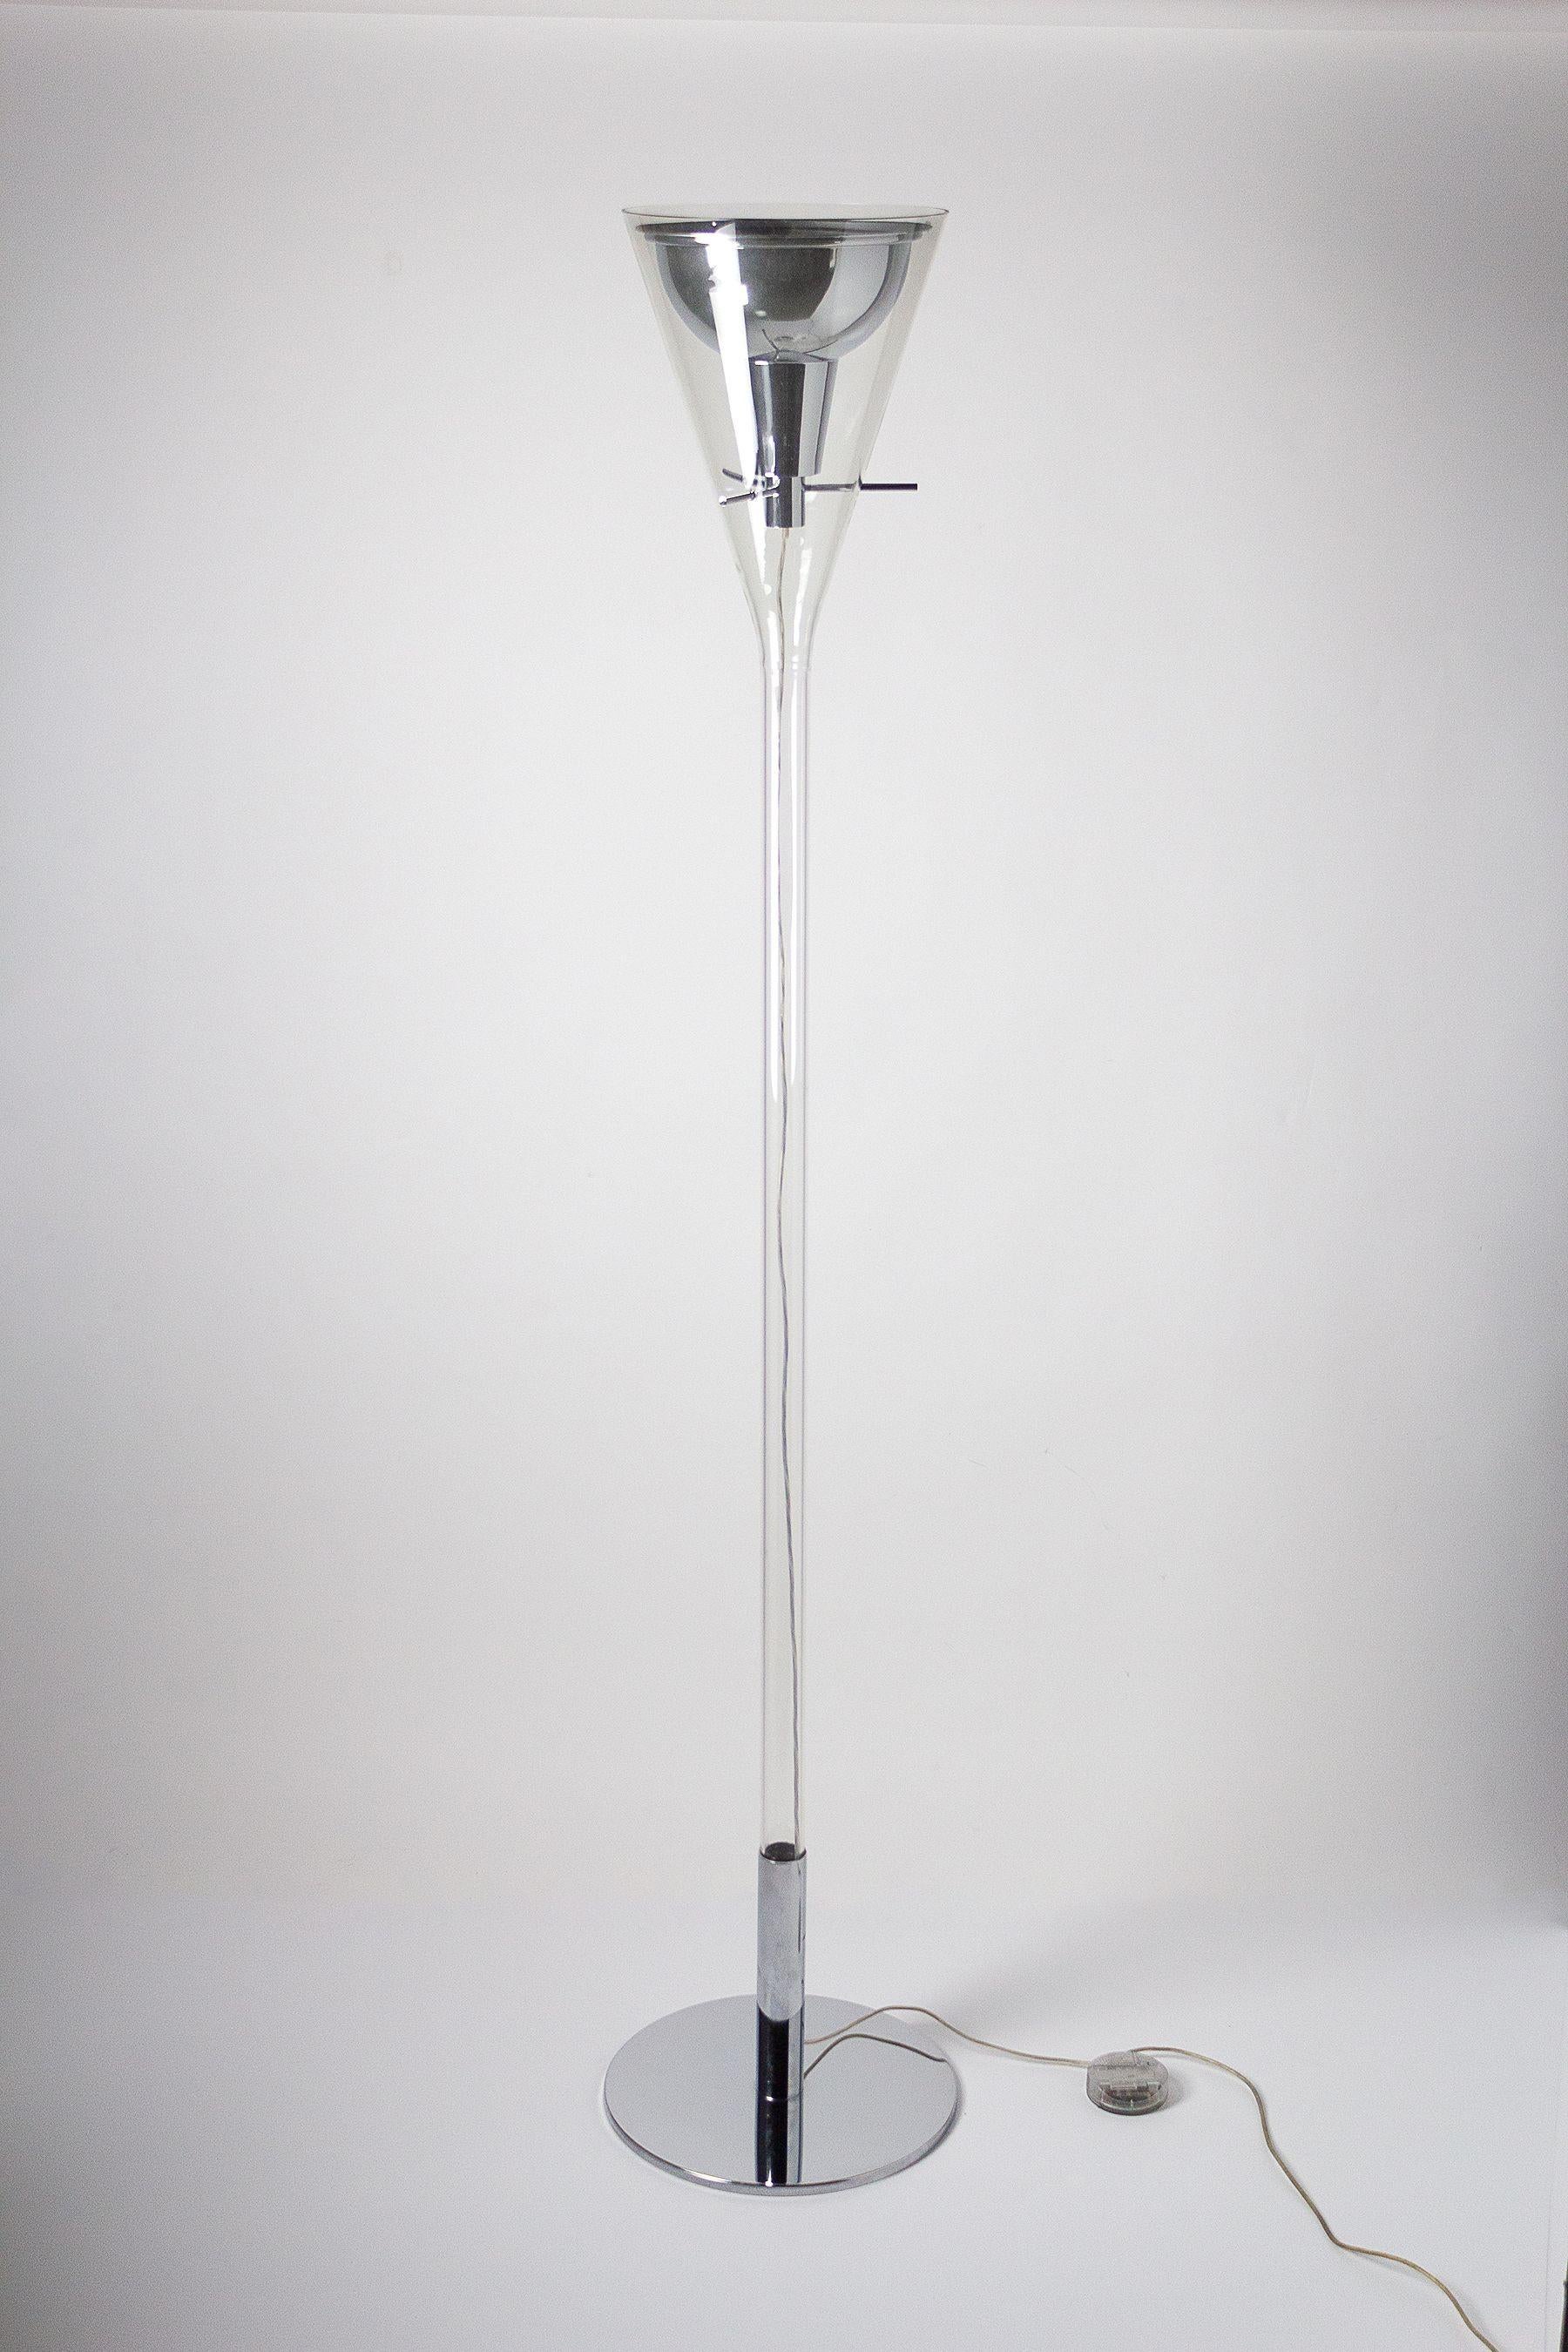 Lampadaire Flute de Franco Raggi pour Fontana Arte en Italie. Cette lampe est dotée d'une base et d'une structure de montage chromées, d'un réflecteur en aluminium poli chromé et d'un câble d'alimentation transparent qui traverse la tige en verre